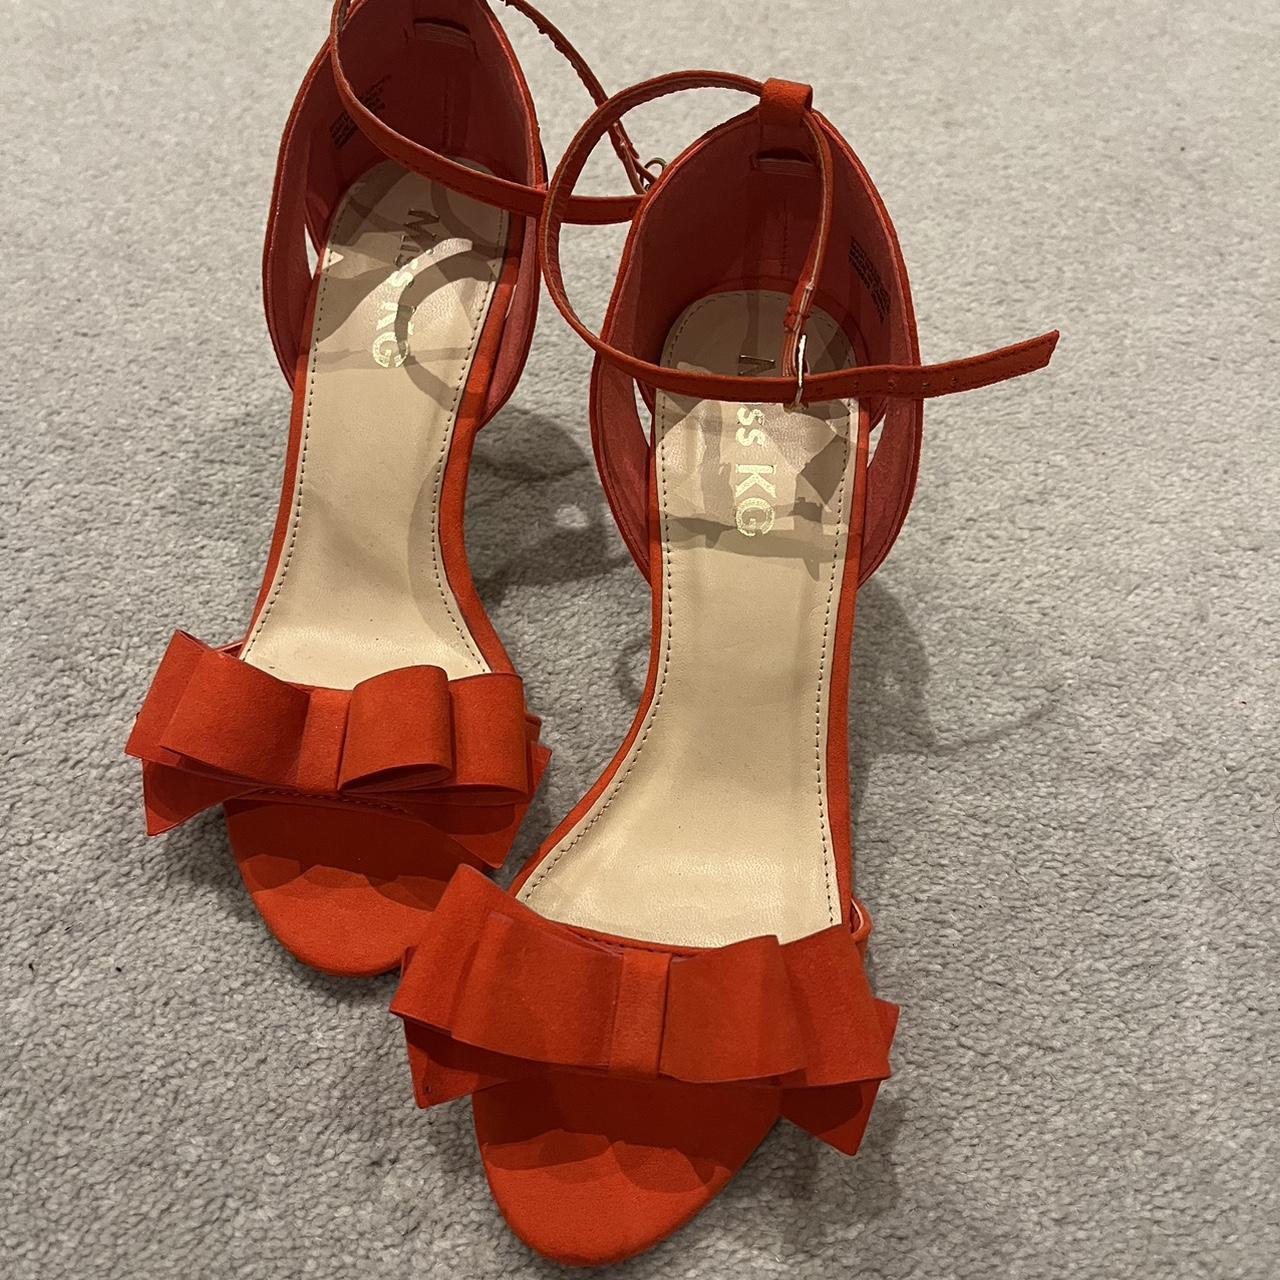 Kurt Geiger shoes coral red orange UK size 6. Some... - Depop